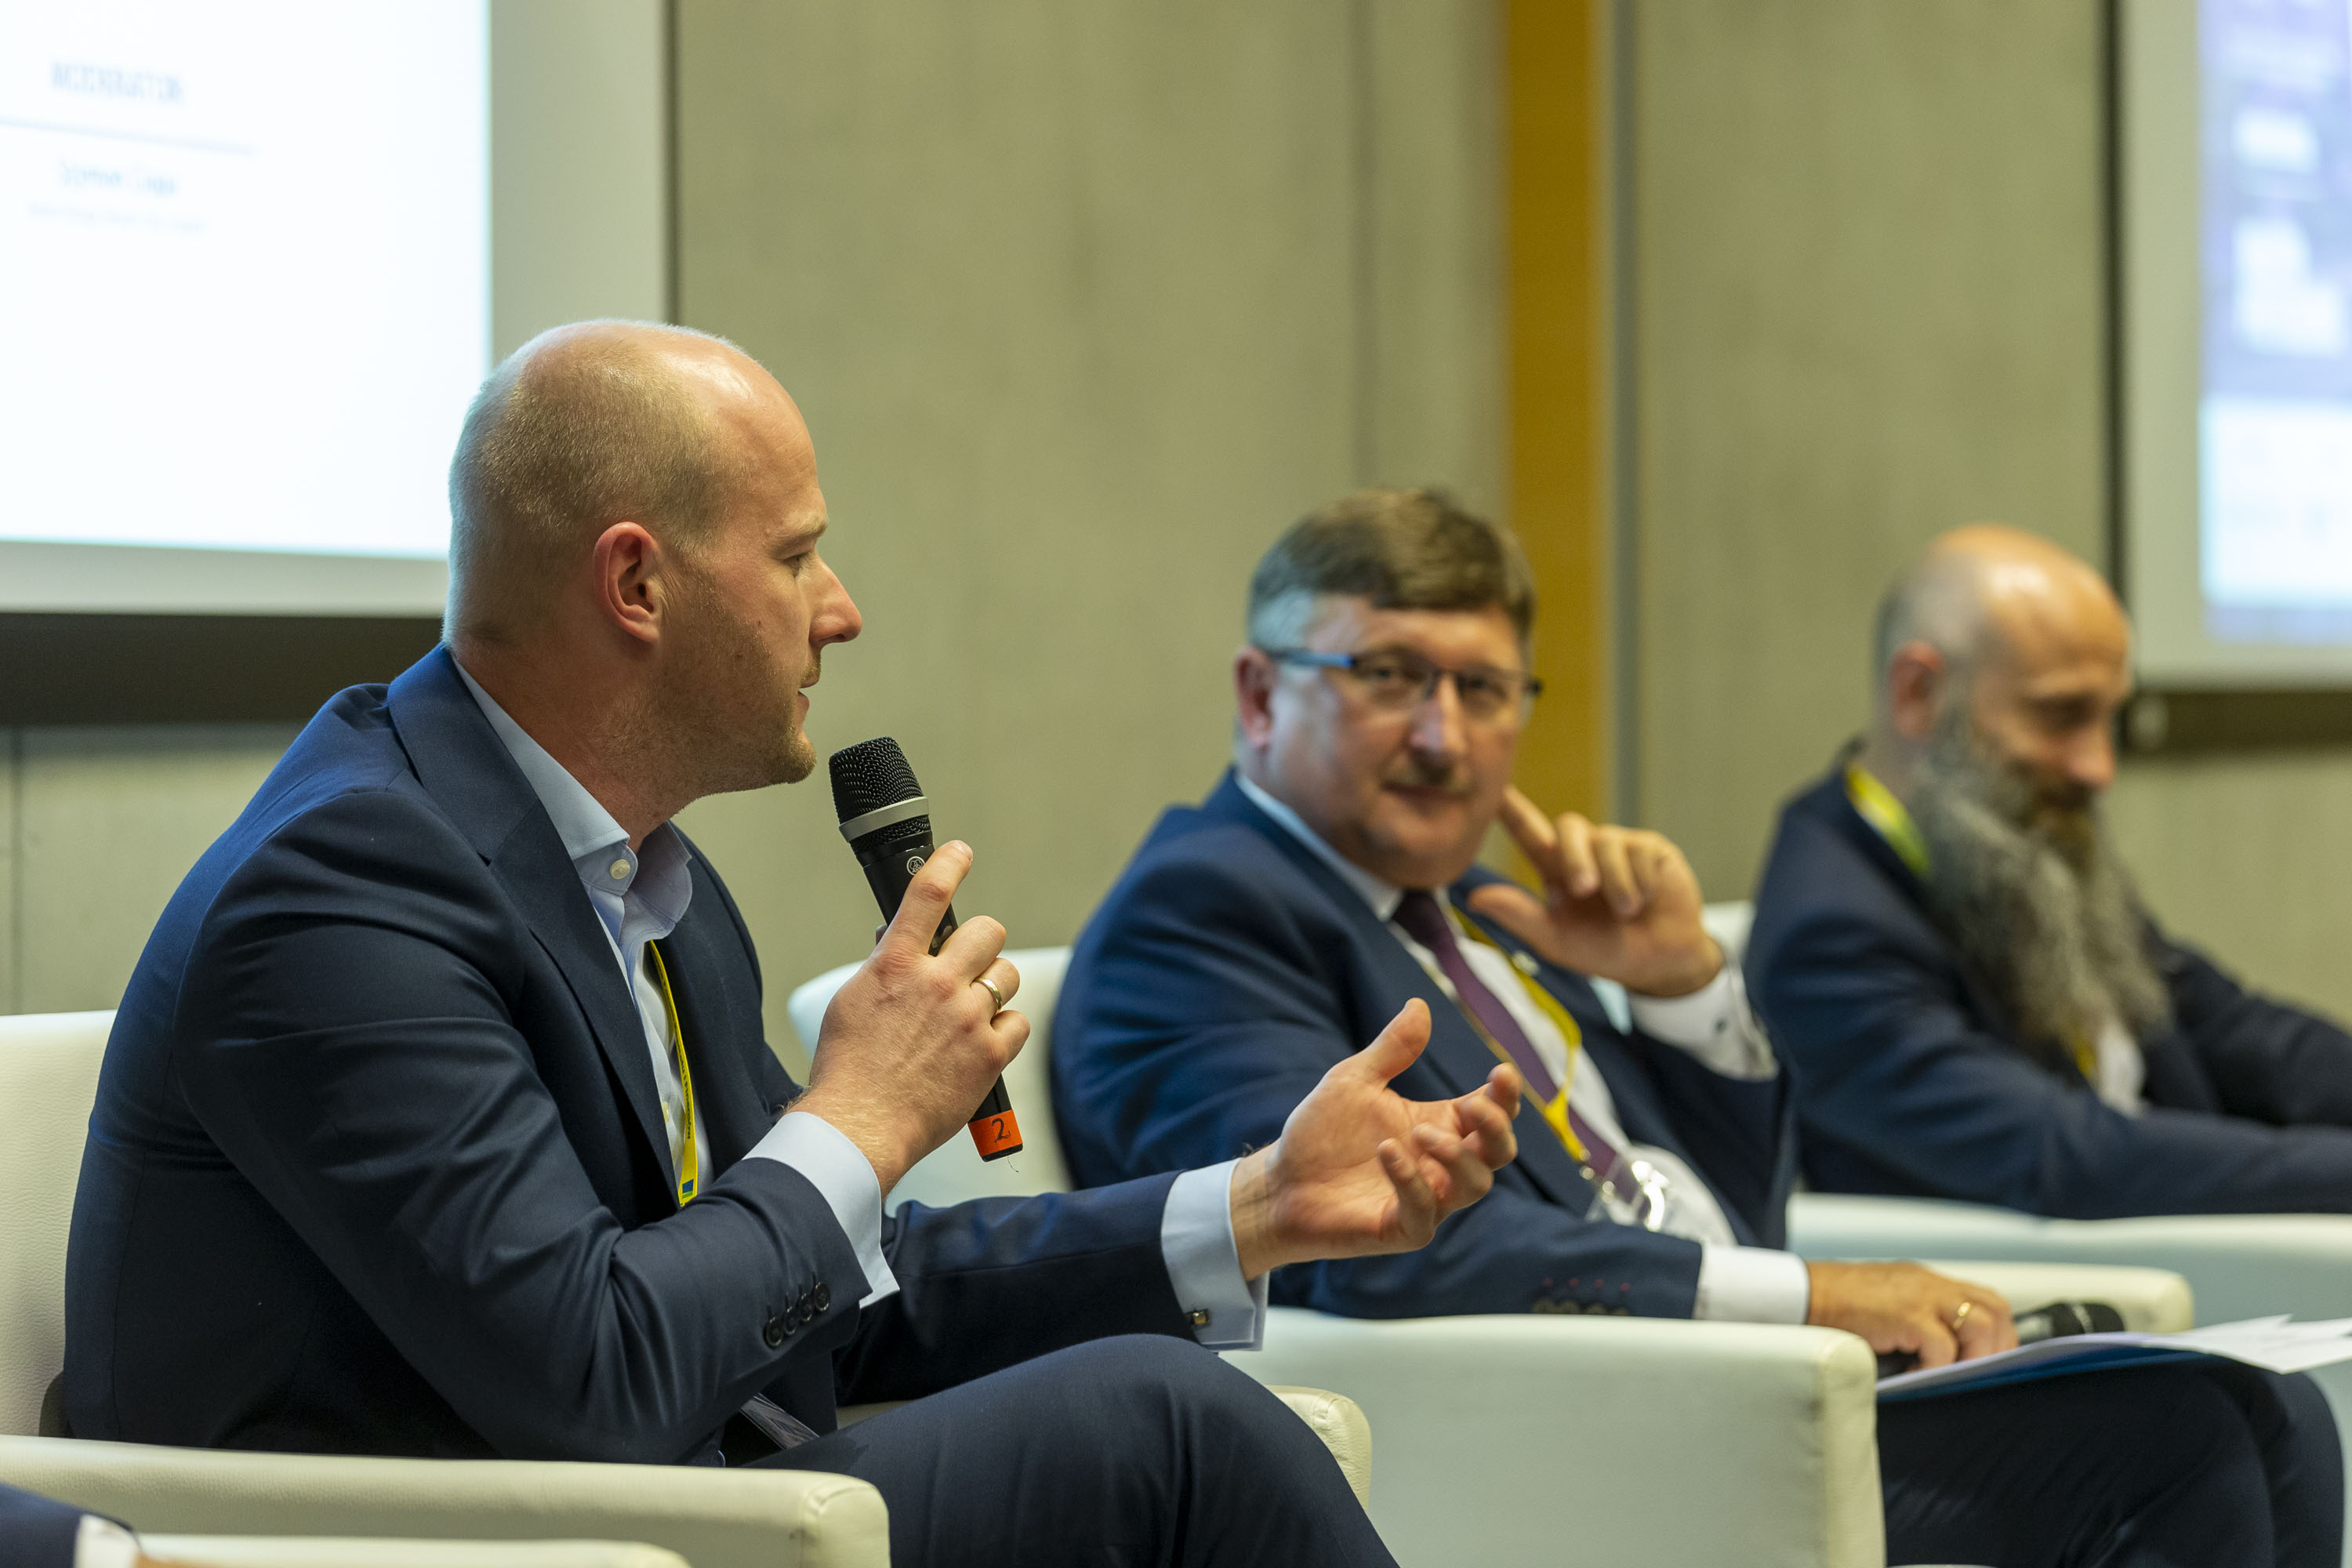 Wiceprezydent Bartosz Bartoszewicz podczas panelu, fot. Andrzej Bożecki / Samorządowe Forum Kapitału i Finansów